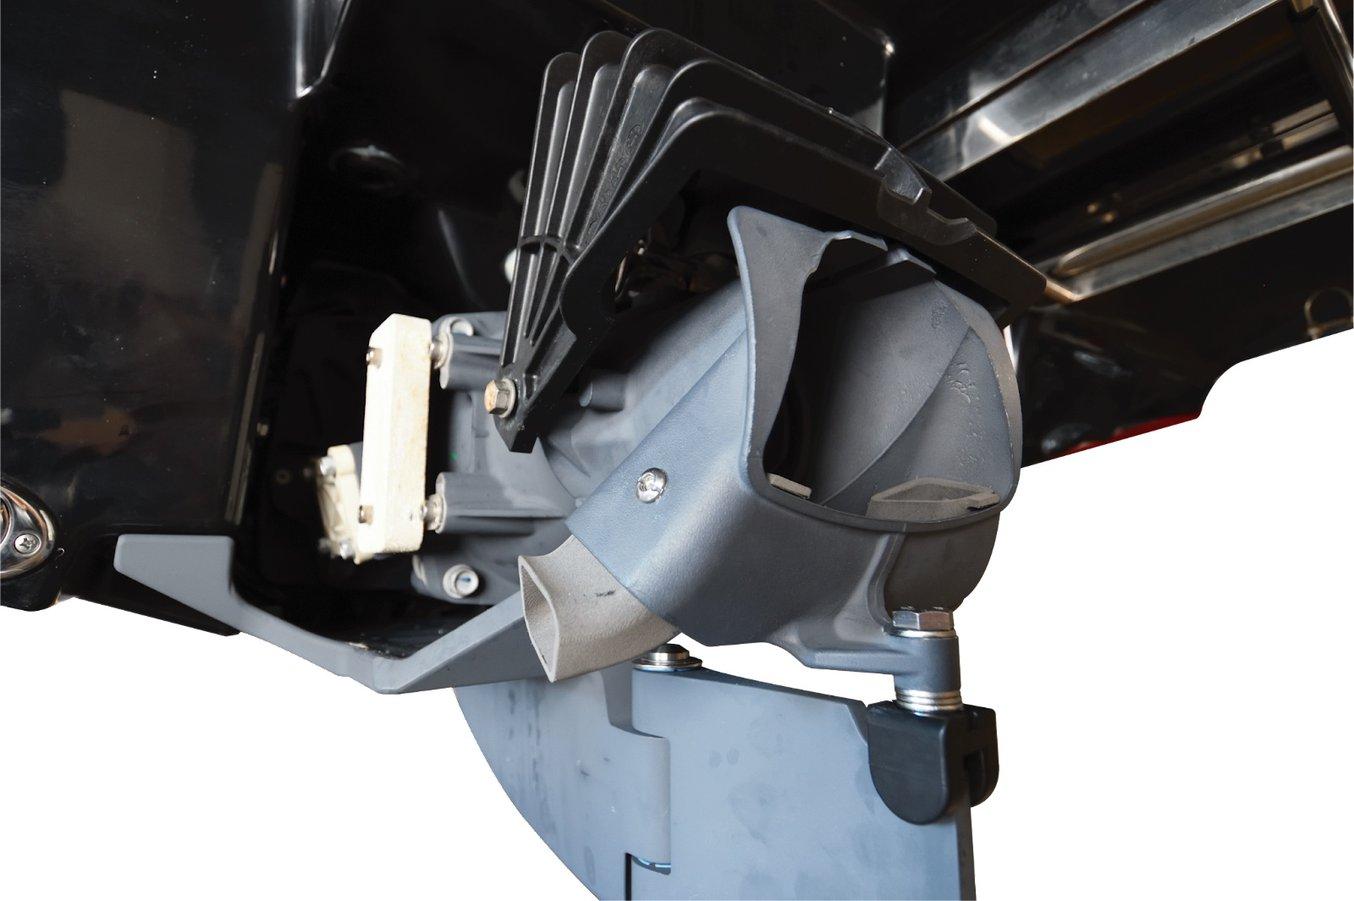 Antriebsdüsen von JetBoat Pilot (hellgraue Teile in der Öffnung des Motors), gedruckt auf dem Fuse 1.